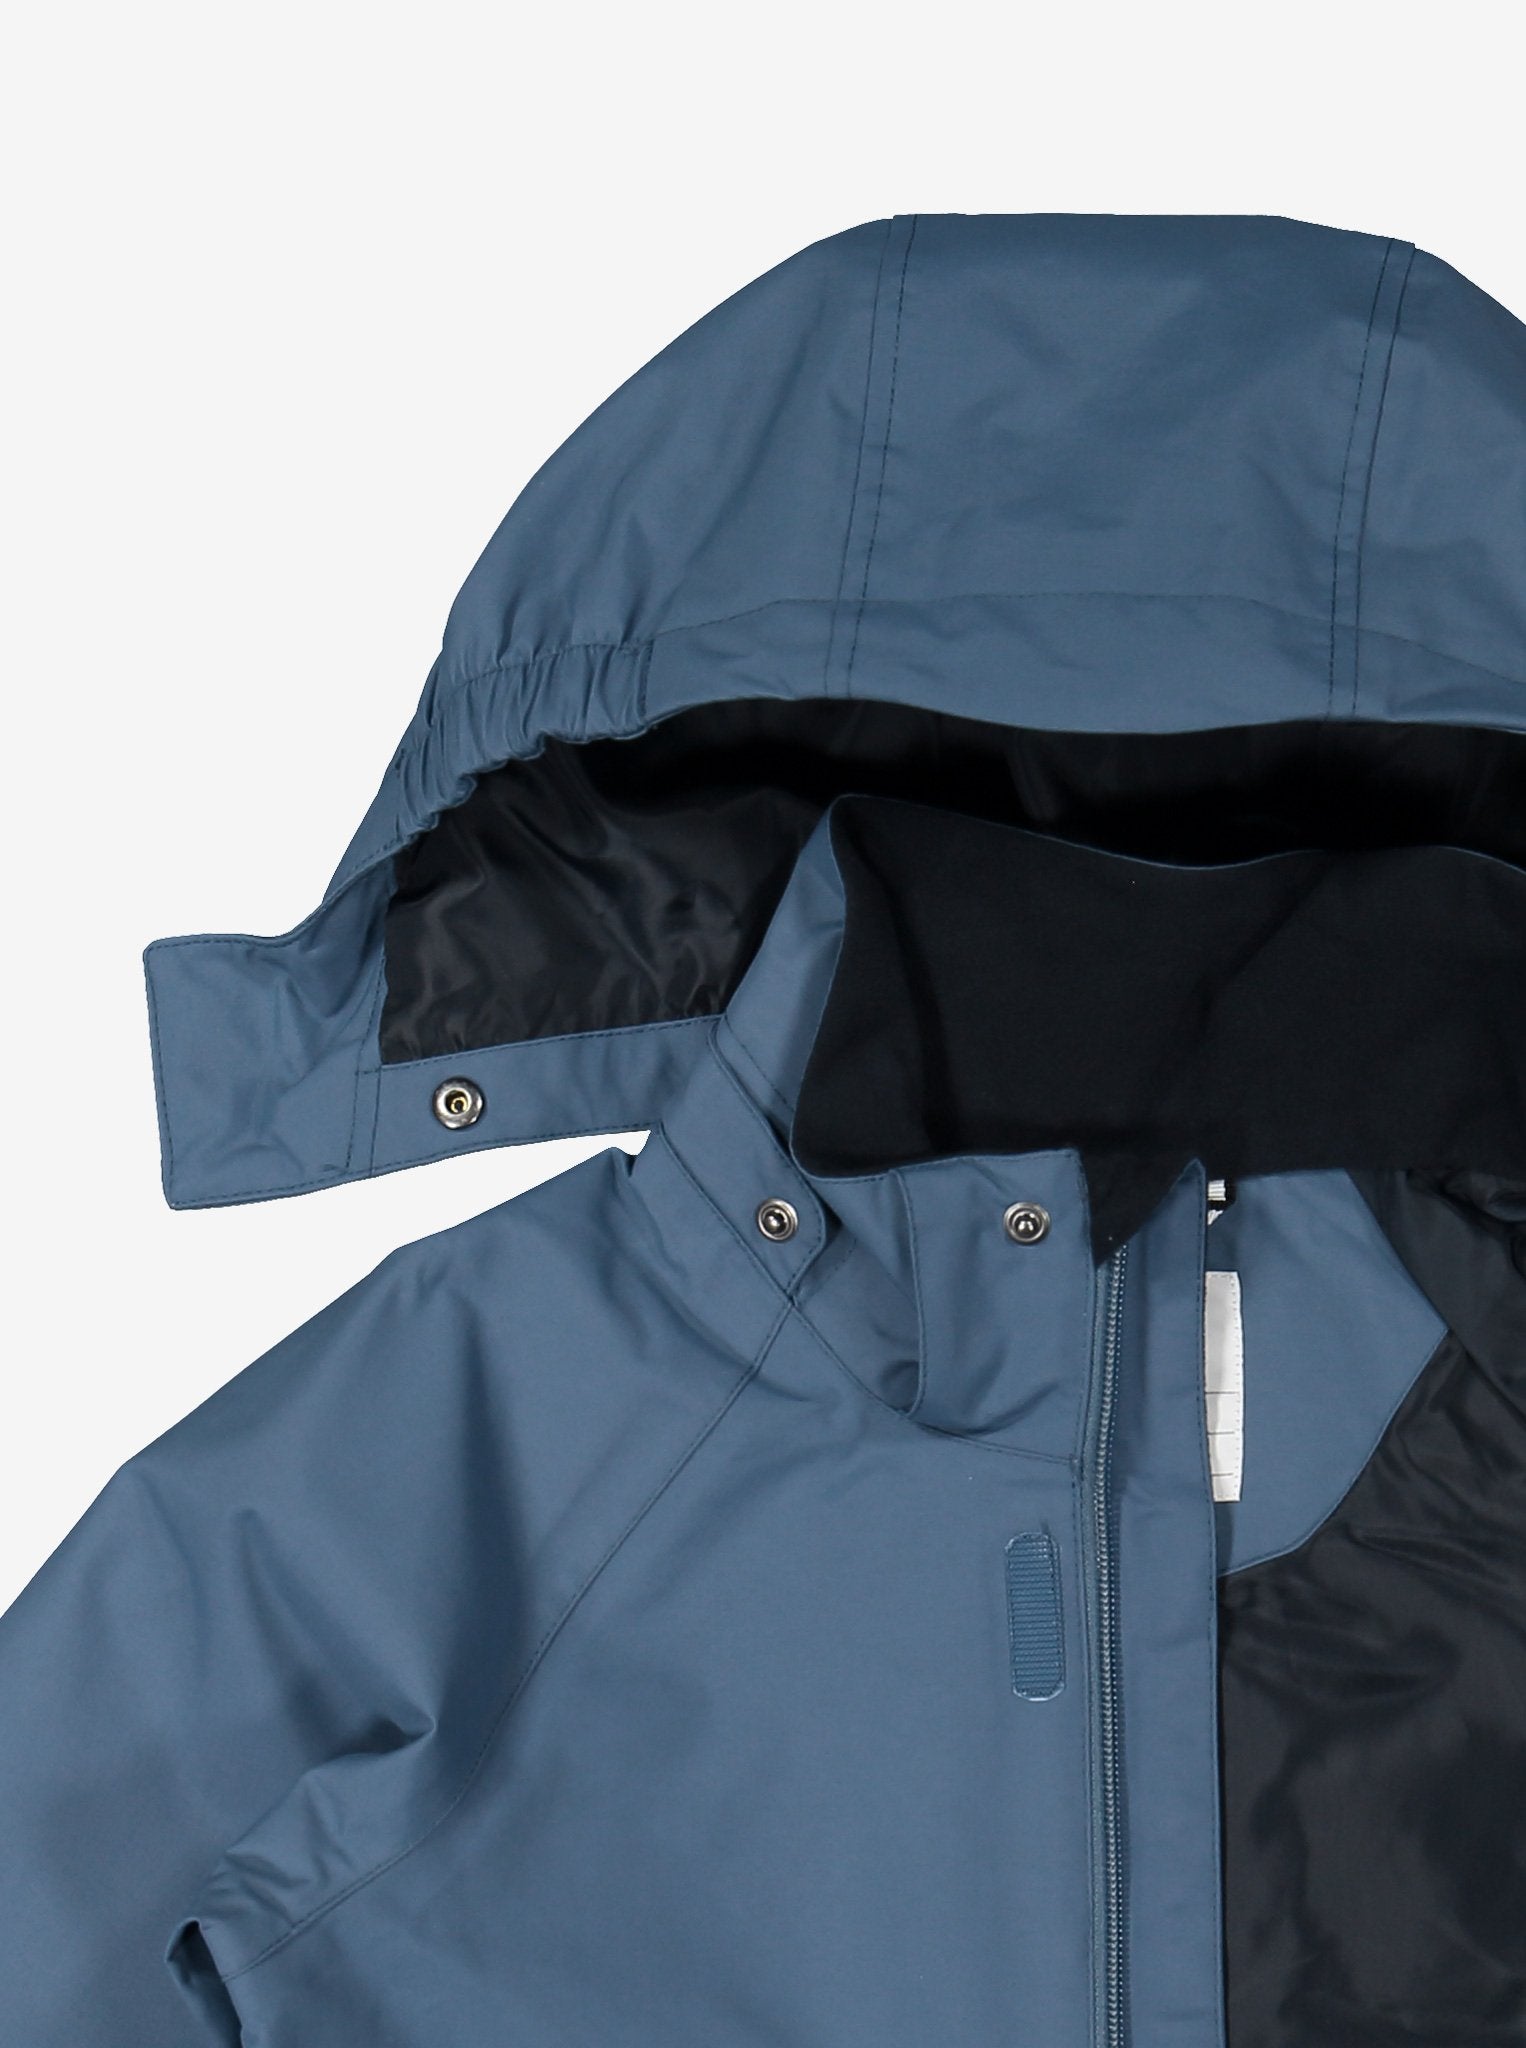 Kids Blue Waterproof Shell Jacket